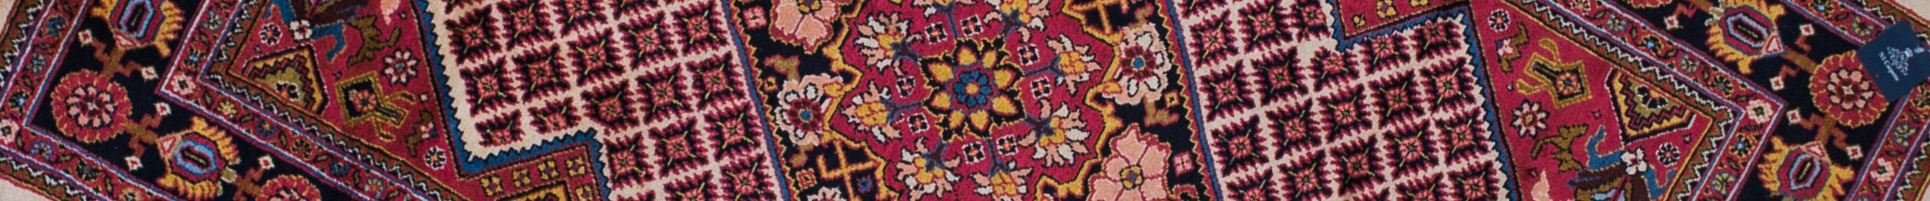 Hamadan Persian Carpet Rug N1Carpet Canada Montreal Tapis Persan 1090